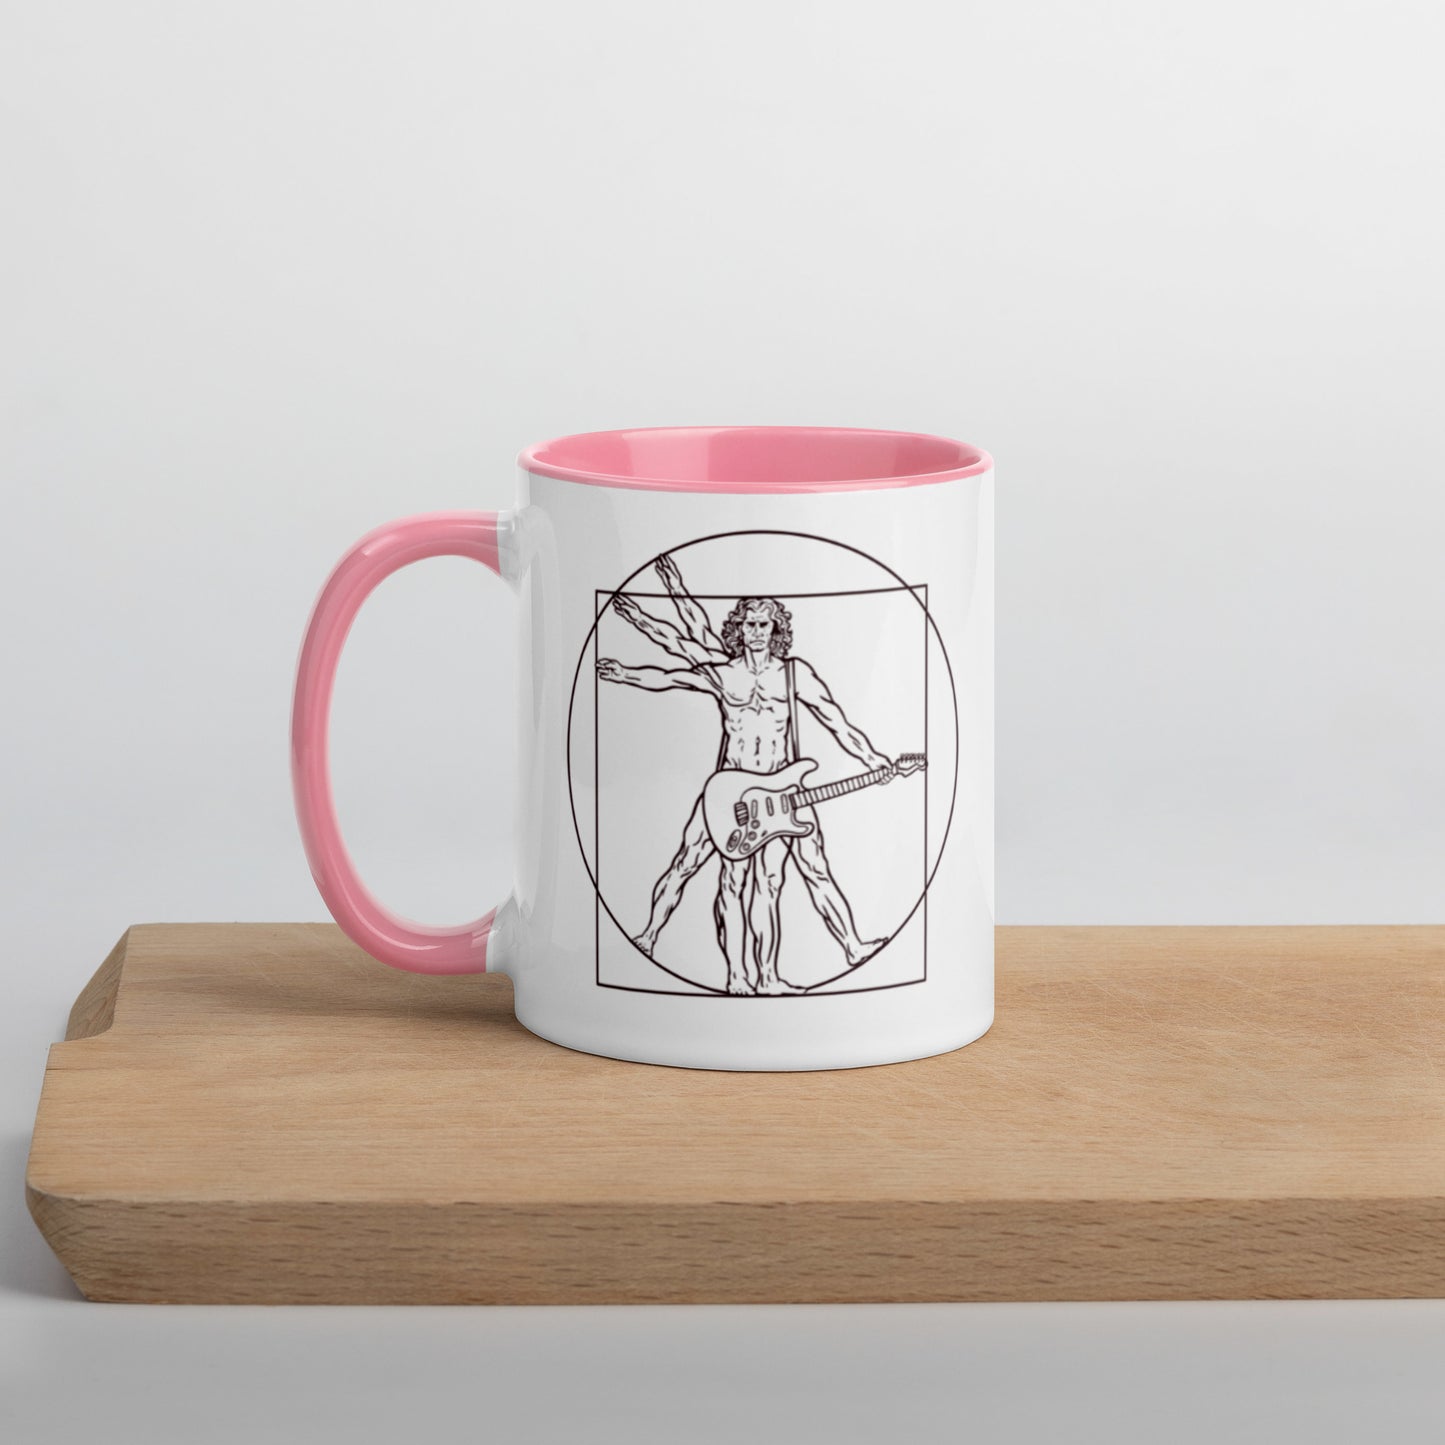 BOO da Vinci "Vitruvian Man" Mug